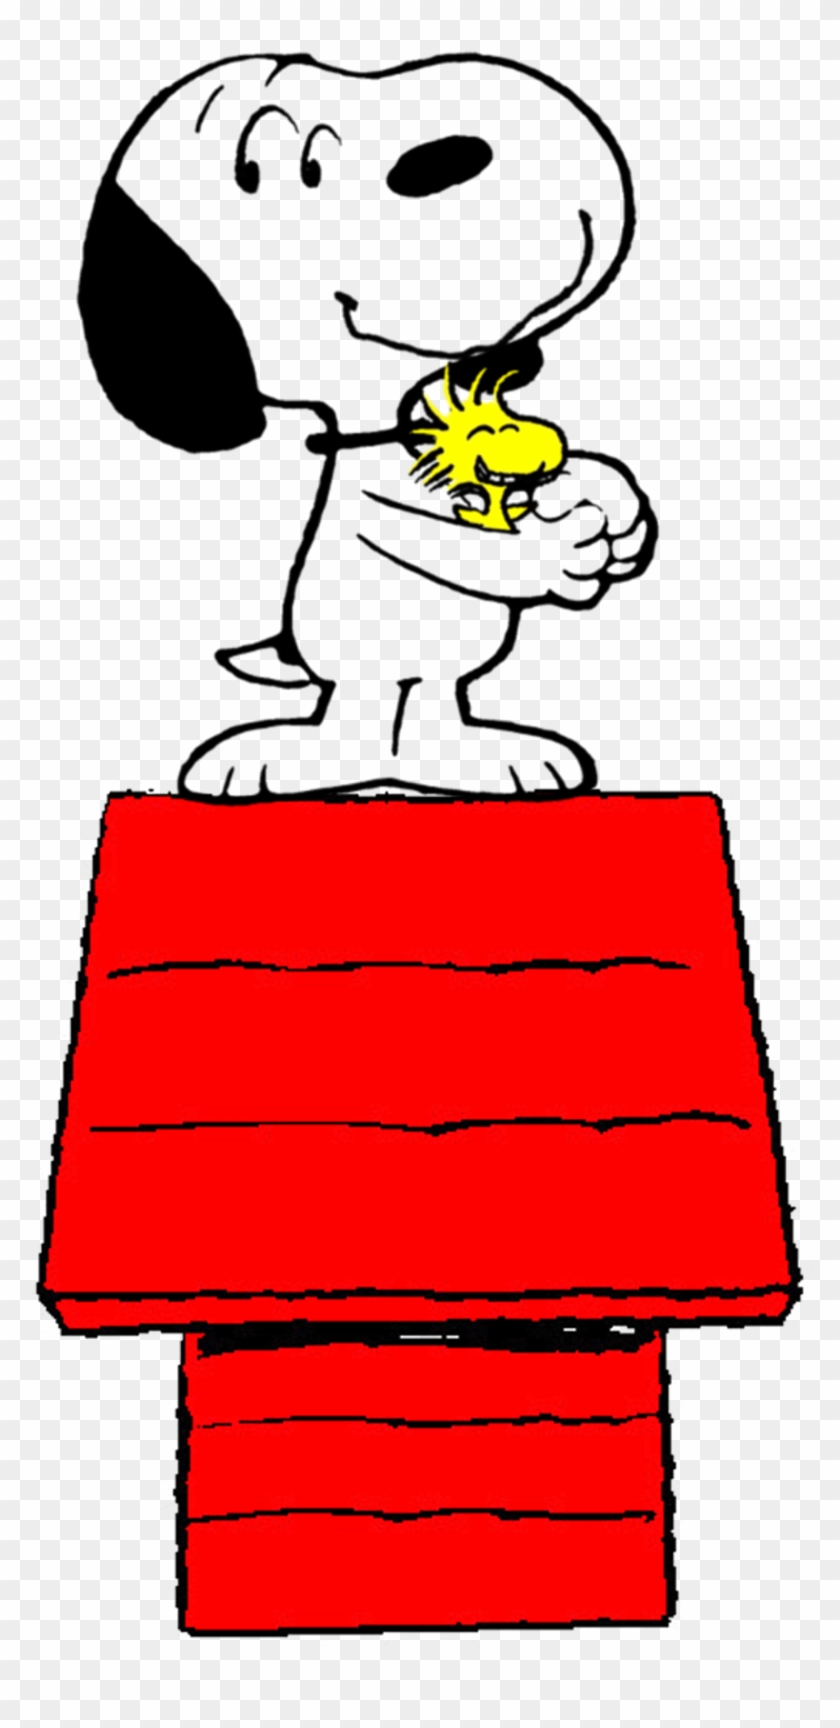 Peanuts Snoopy And Woodstock Movie - Peanuts Snoopy And Woodstock Movie #1532030